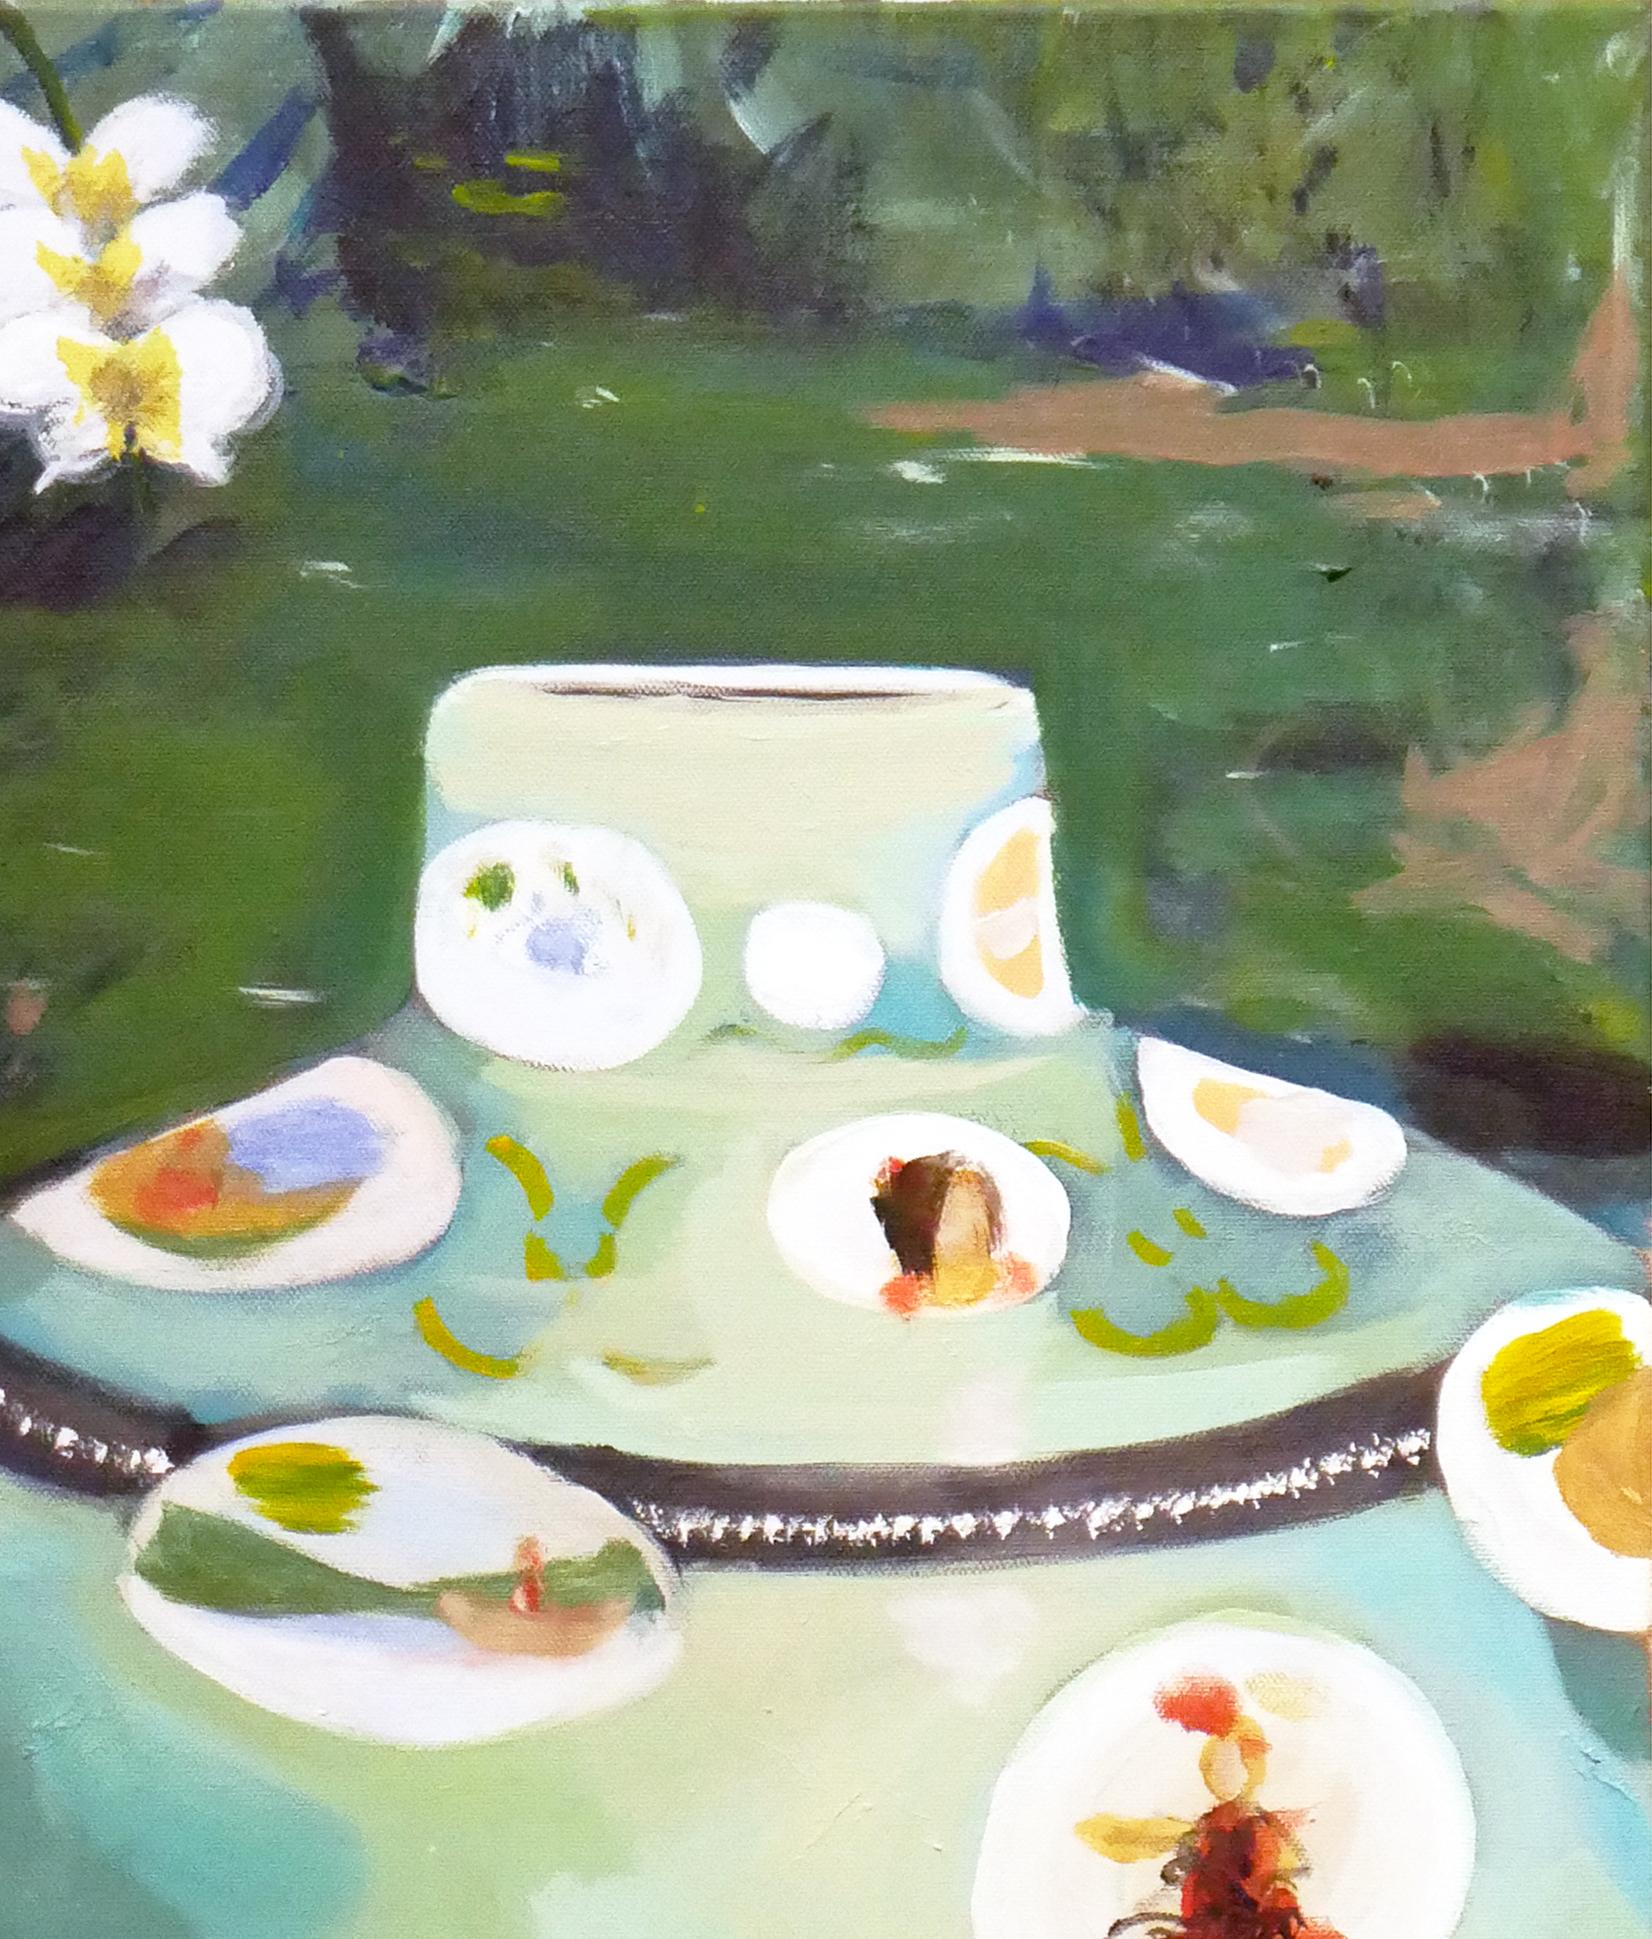 Buntes, skurriles, abstraktes zeitgenössisches Gemälde des Künstlers Moisés Villafuerte aus Houston, TX. Das Werk zeigt ein inszeniertes Stillleben mit einer pastellfarbenen Vase, einer Orchidee und einer Sammlung von Schneckenhäusern vor einem grün